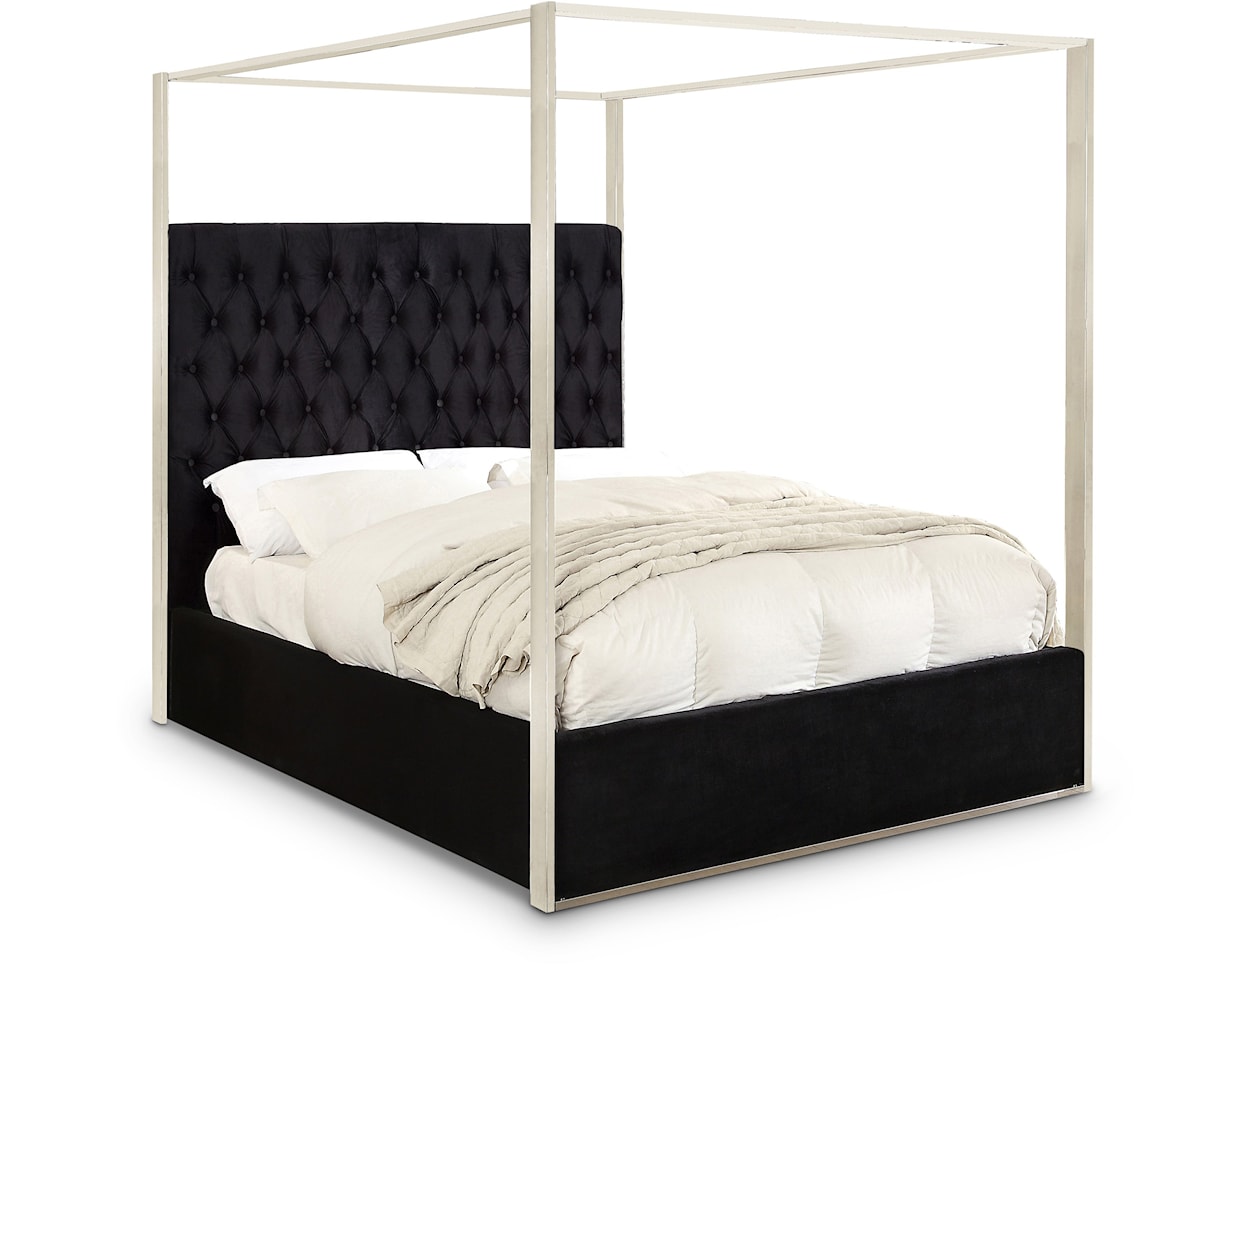 Meridian Furniture Porter King Bed